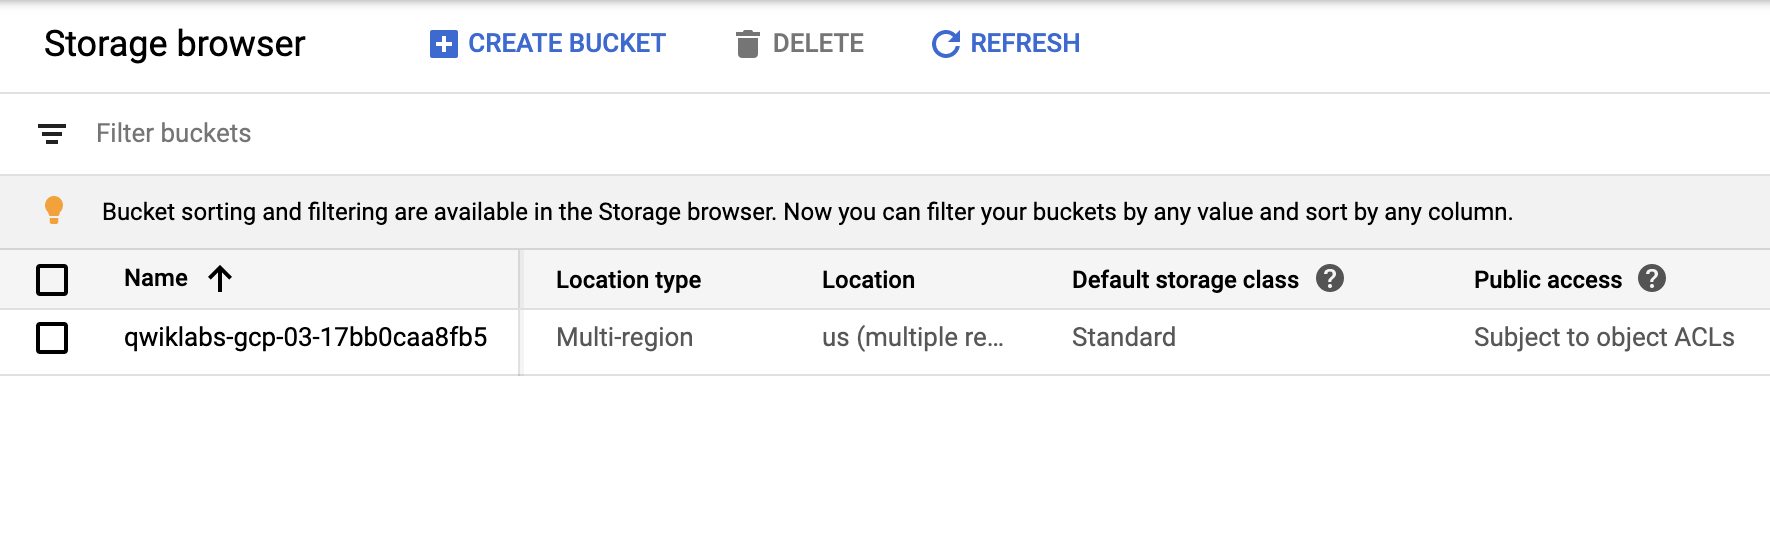 Browser Storage contenente il bucket pertinente